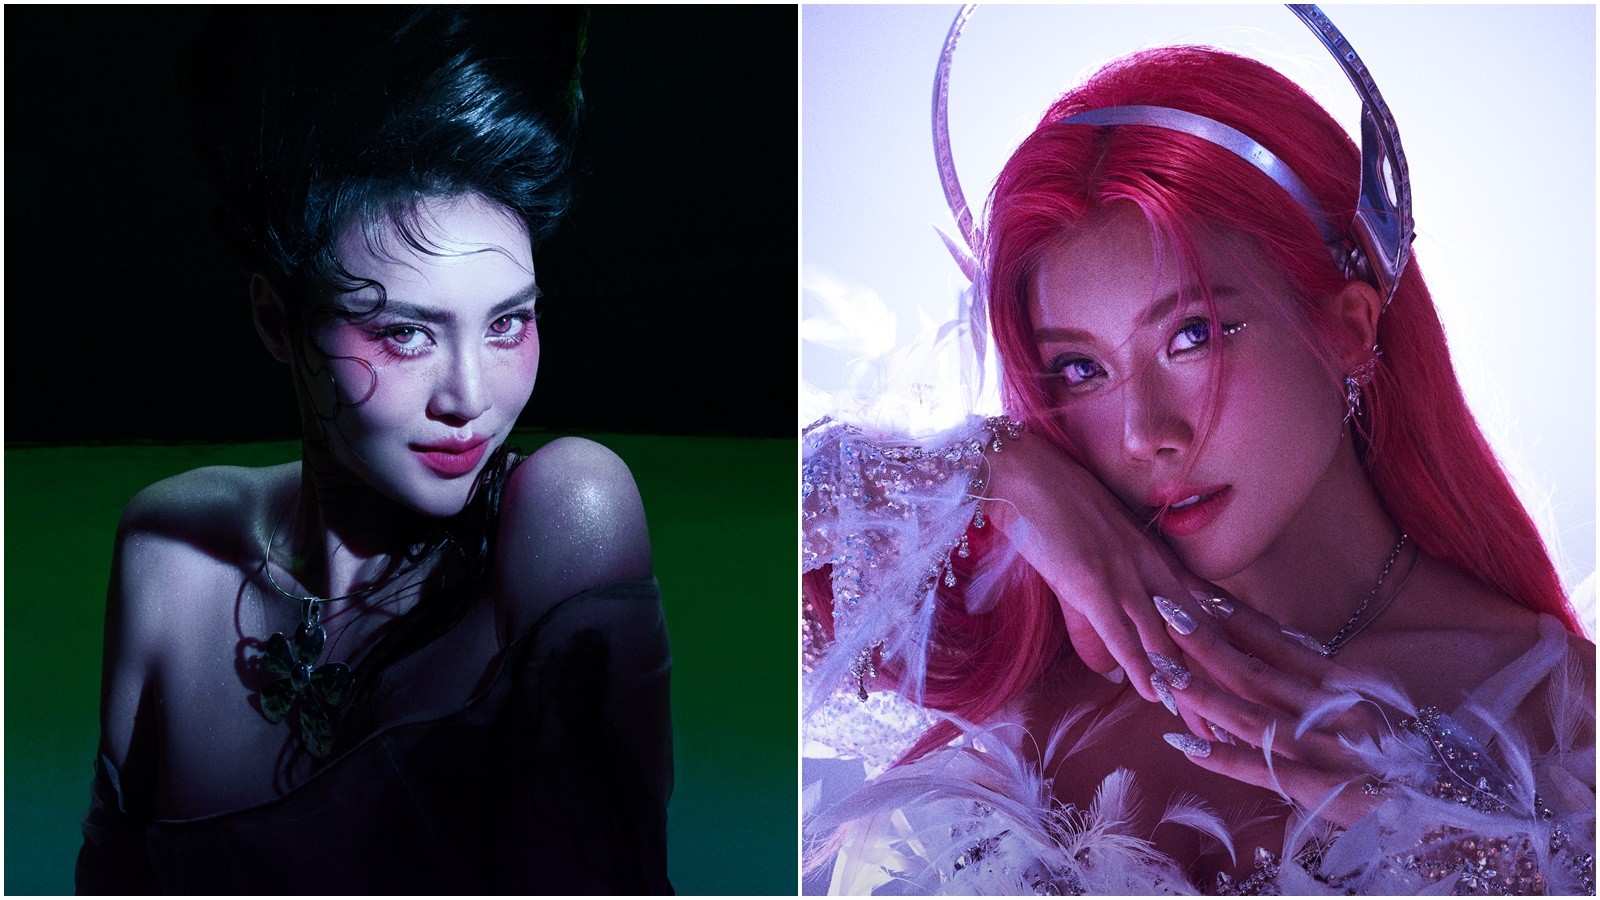 LUNAS tung teaser MV "Moonlight": Vỏn vẹn 20s nhưng hé lộ tạo hình cuốn hút, gây tò mò với nhiều chi tiết ẩn ý - 2